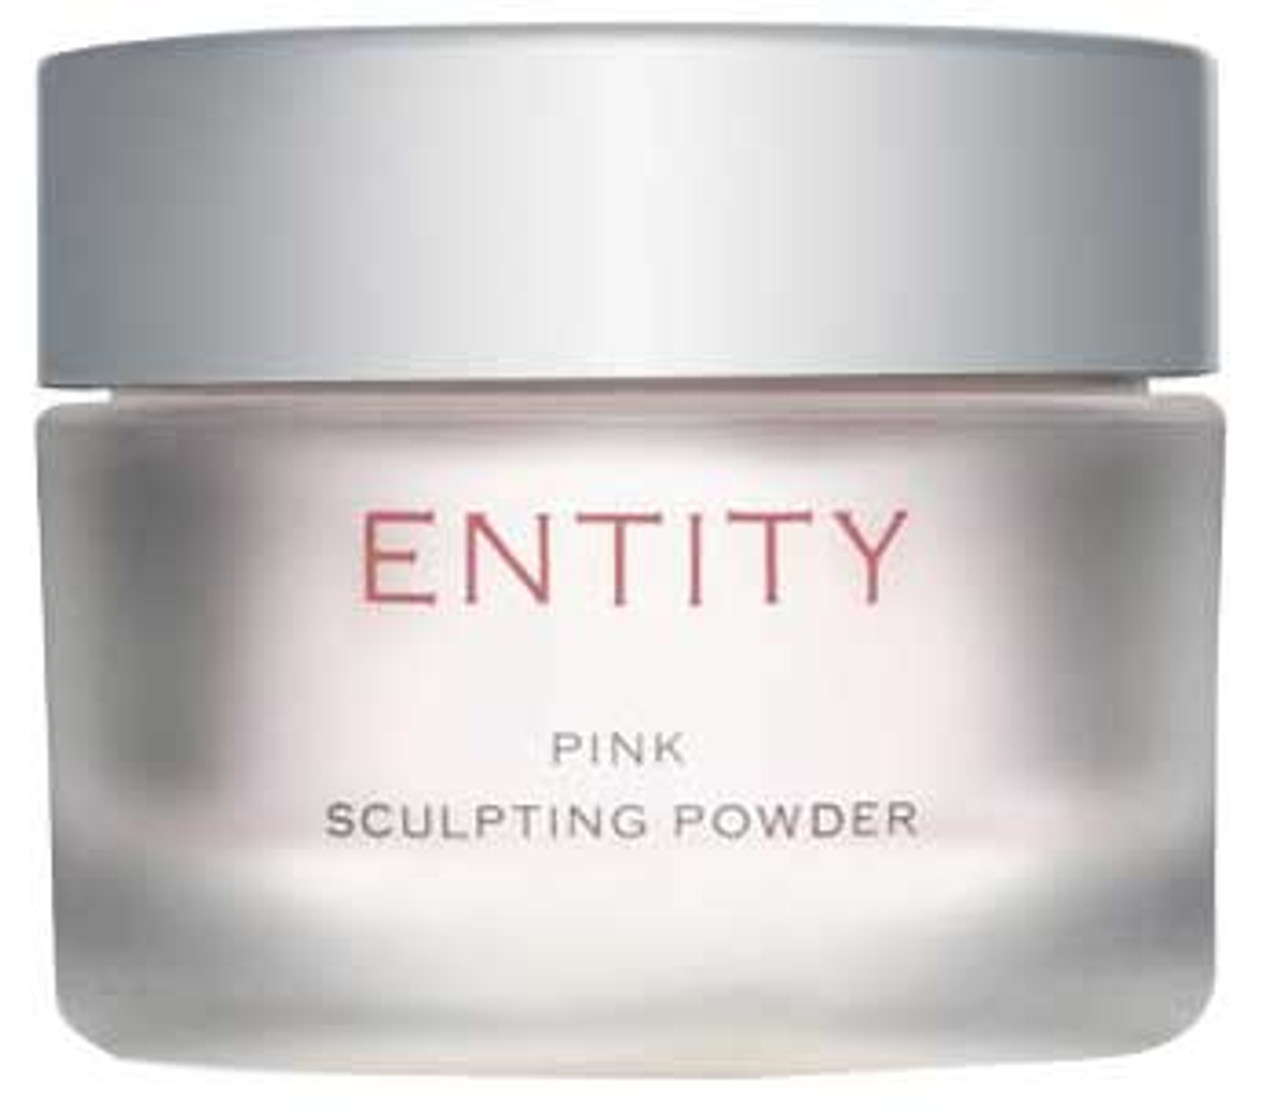 Entity Pink Sculpting Powder - .32oz (9g)